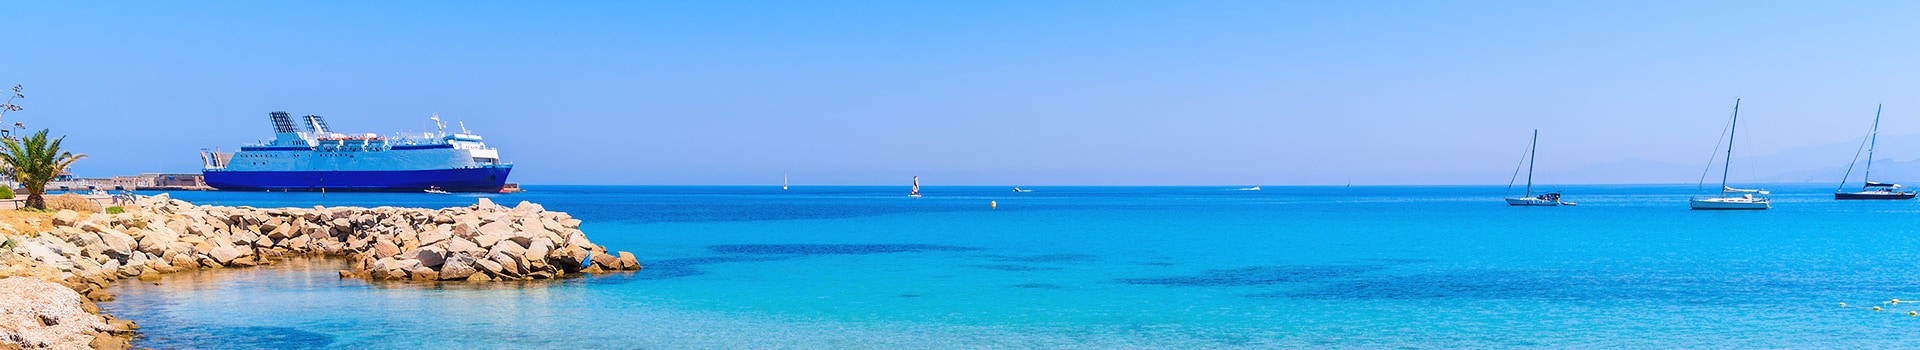 Biglietti da Nave e Traghetto per Formentera